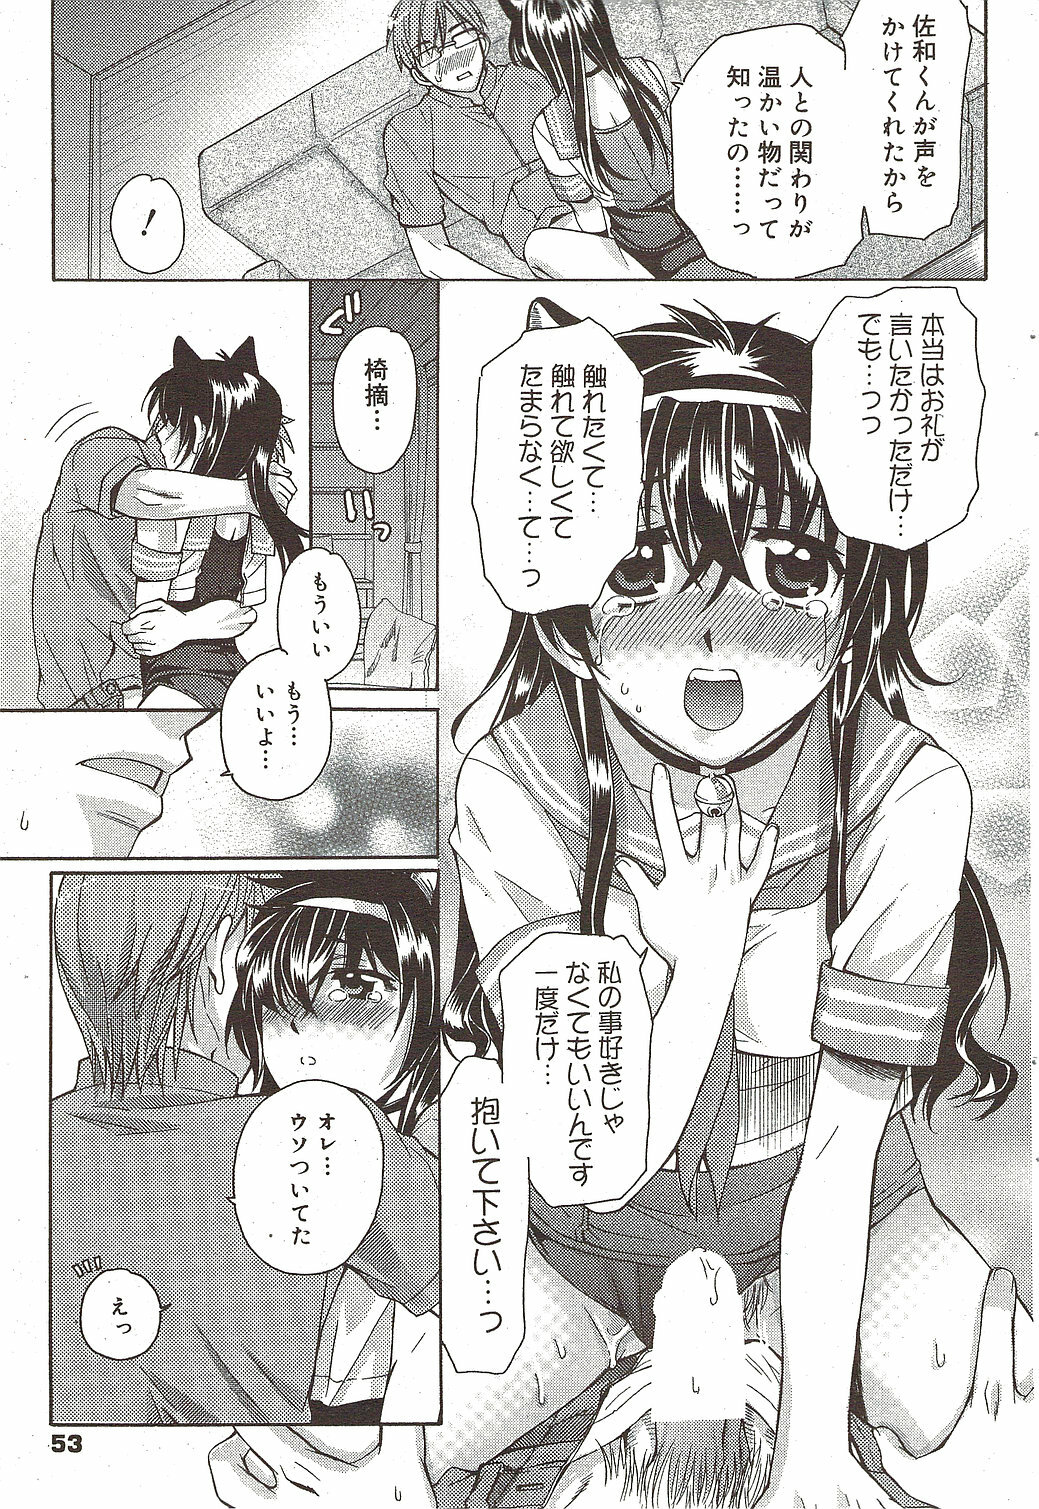 Manga Bangaichi 2009-12 page 53 full